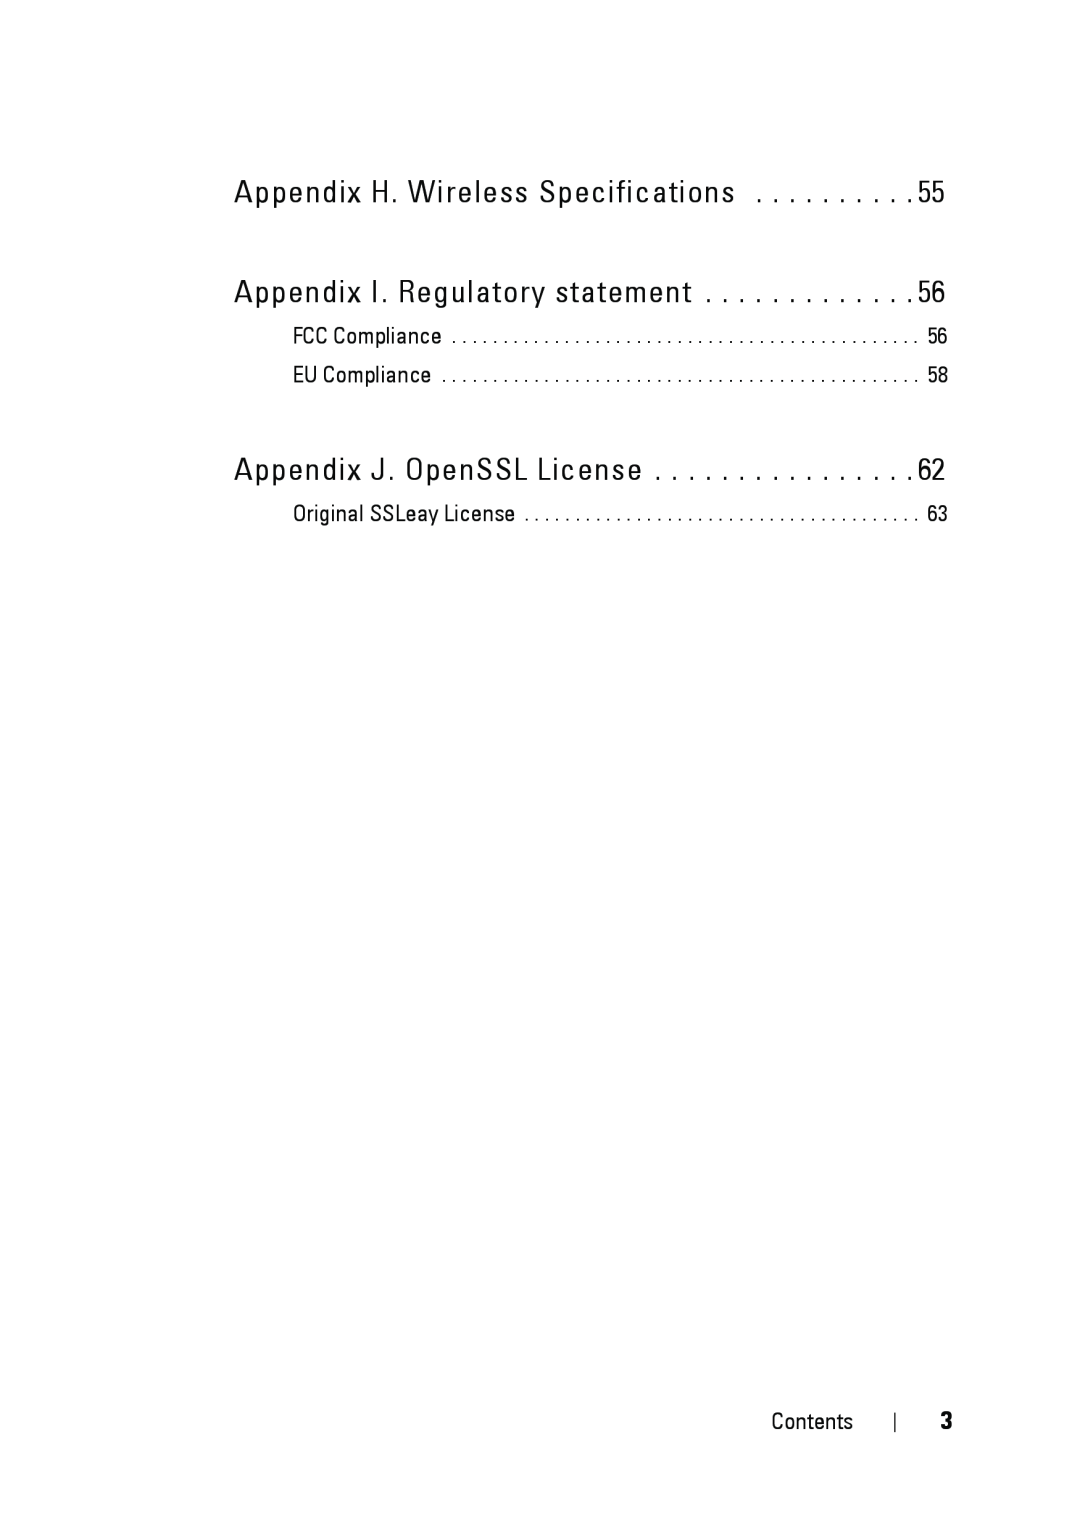 Dell 5002 manual Appendix J. OpenSSL License, Original SSLeay License, Contents 